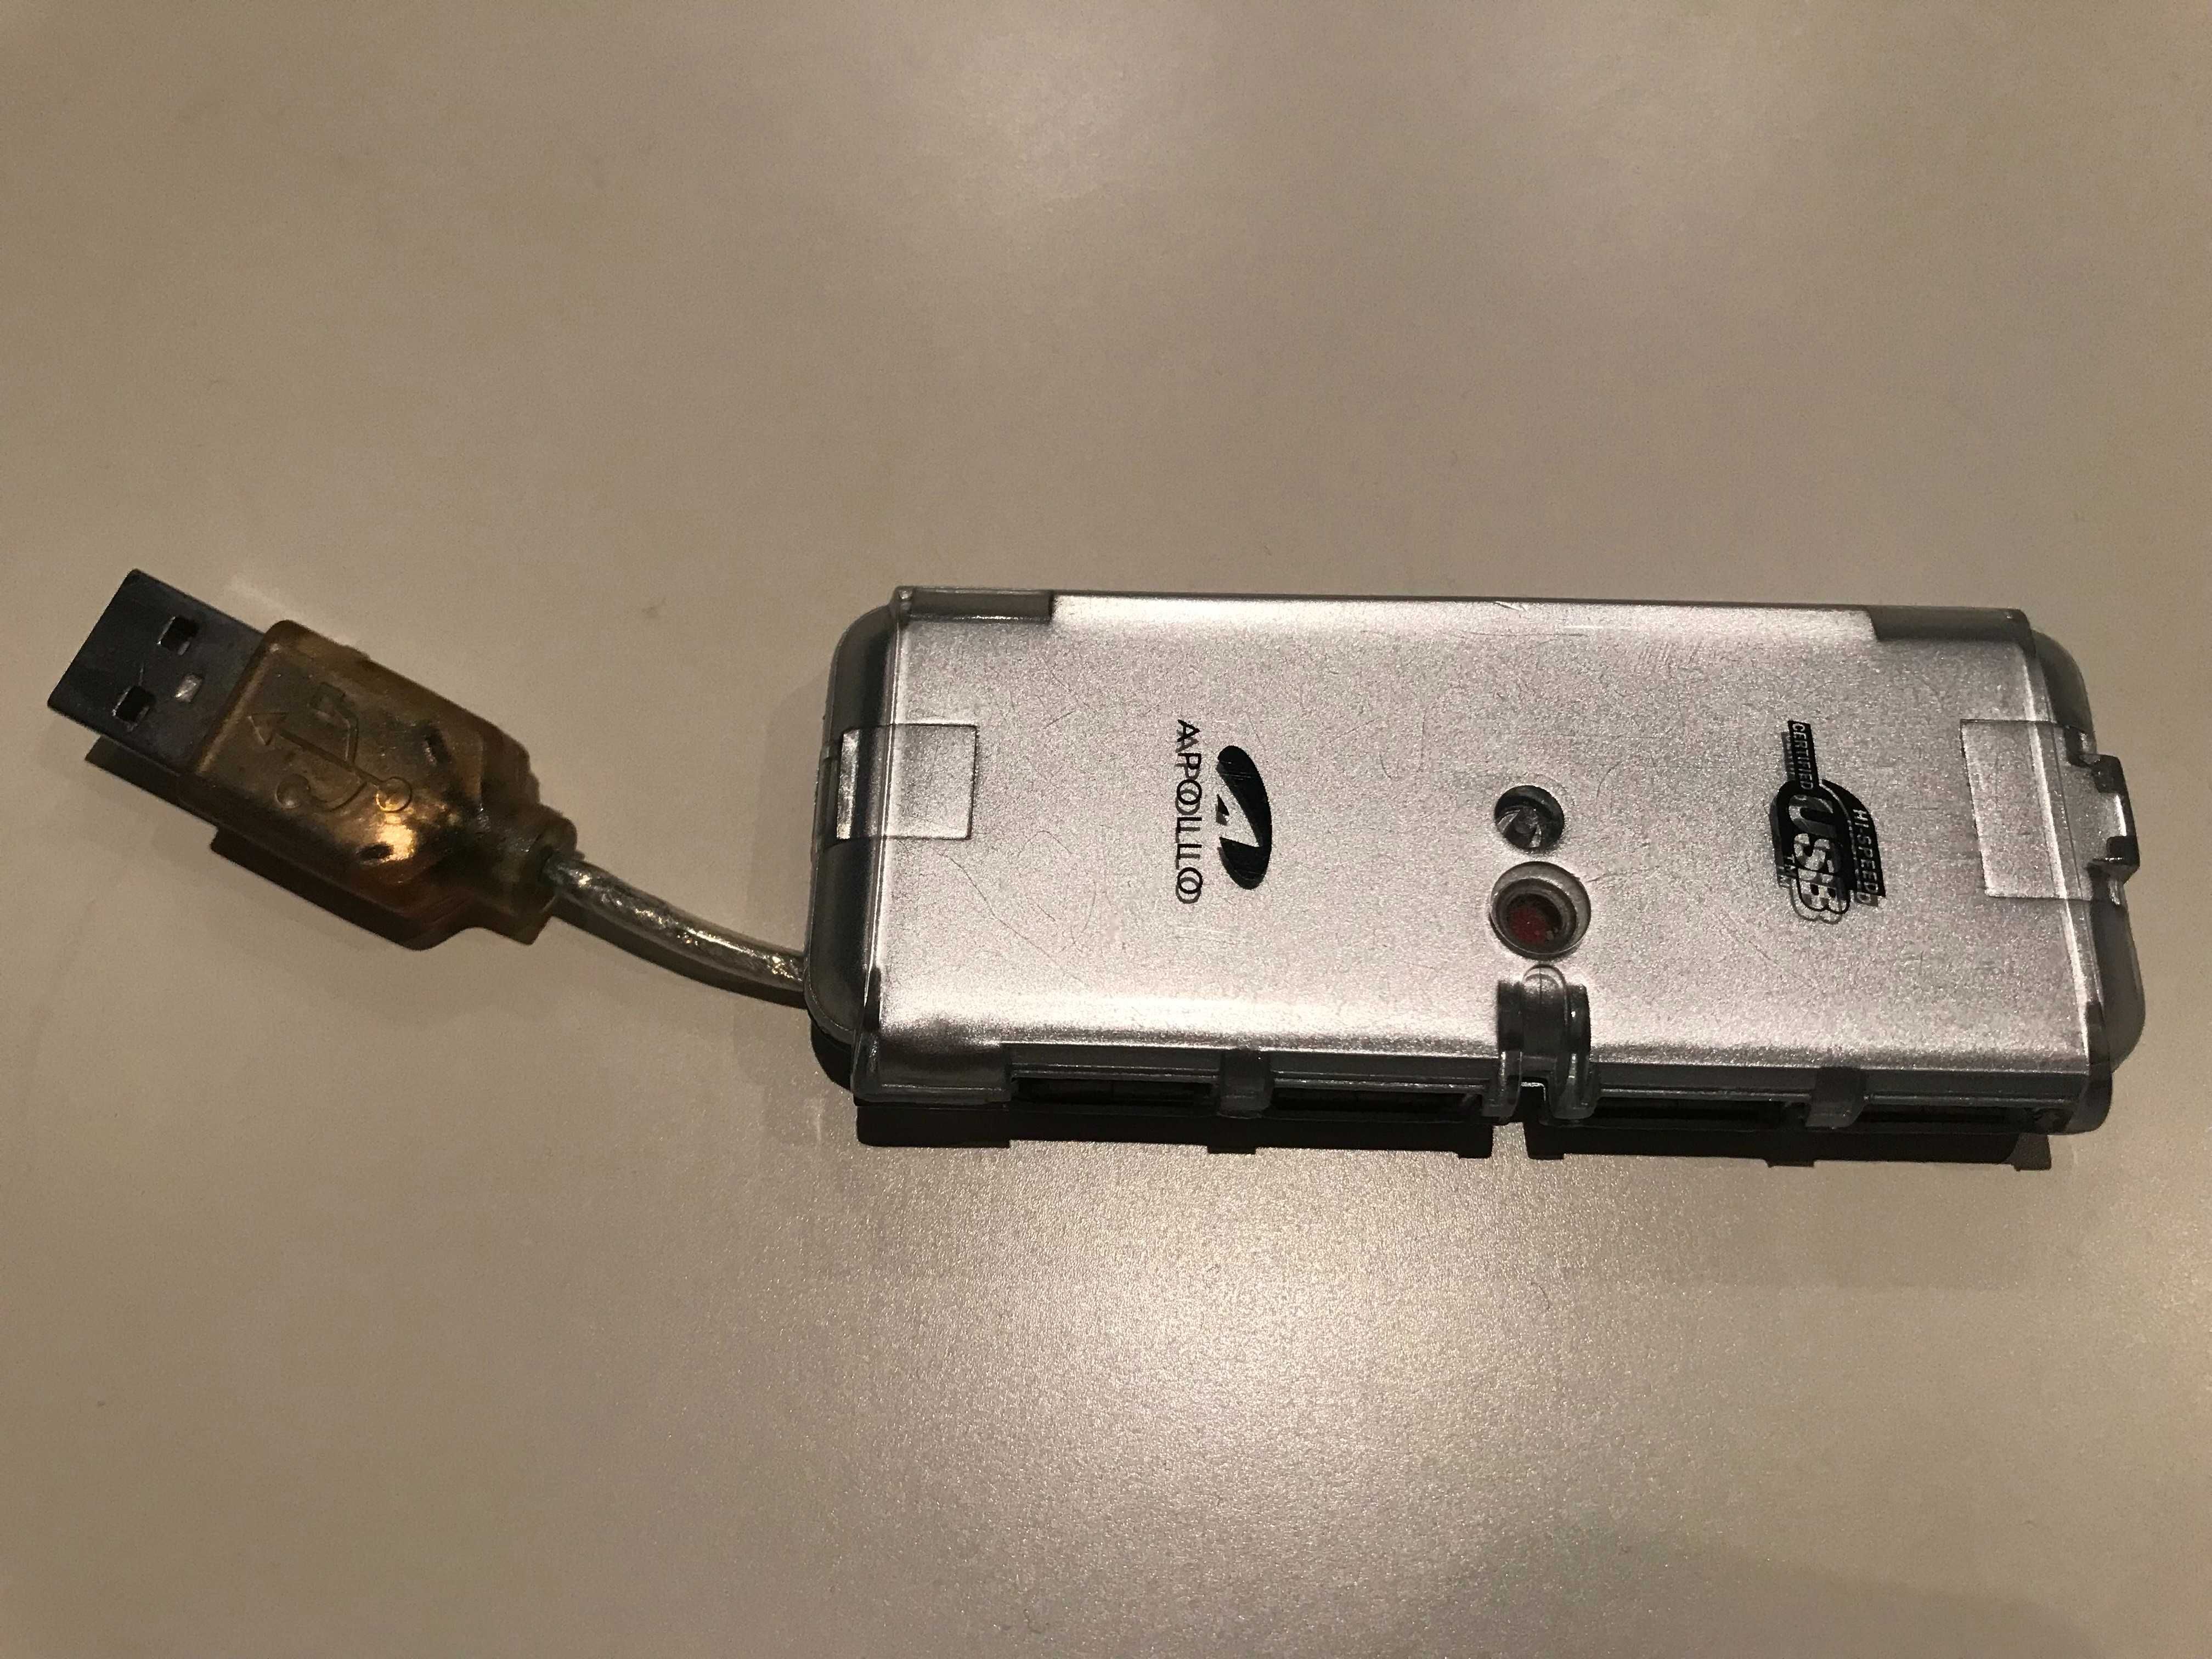 Hub USB z 4 portami - stan nieznany/zepsuty